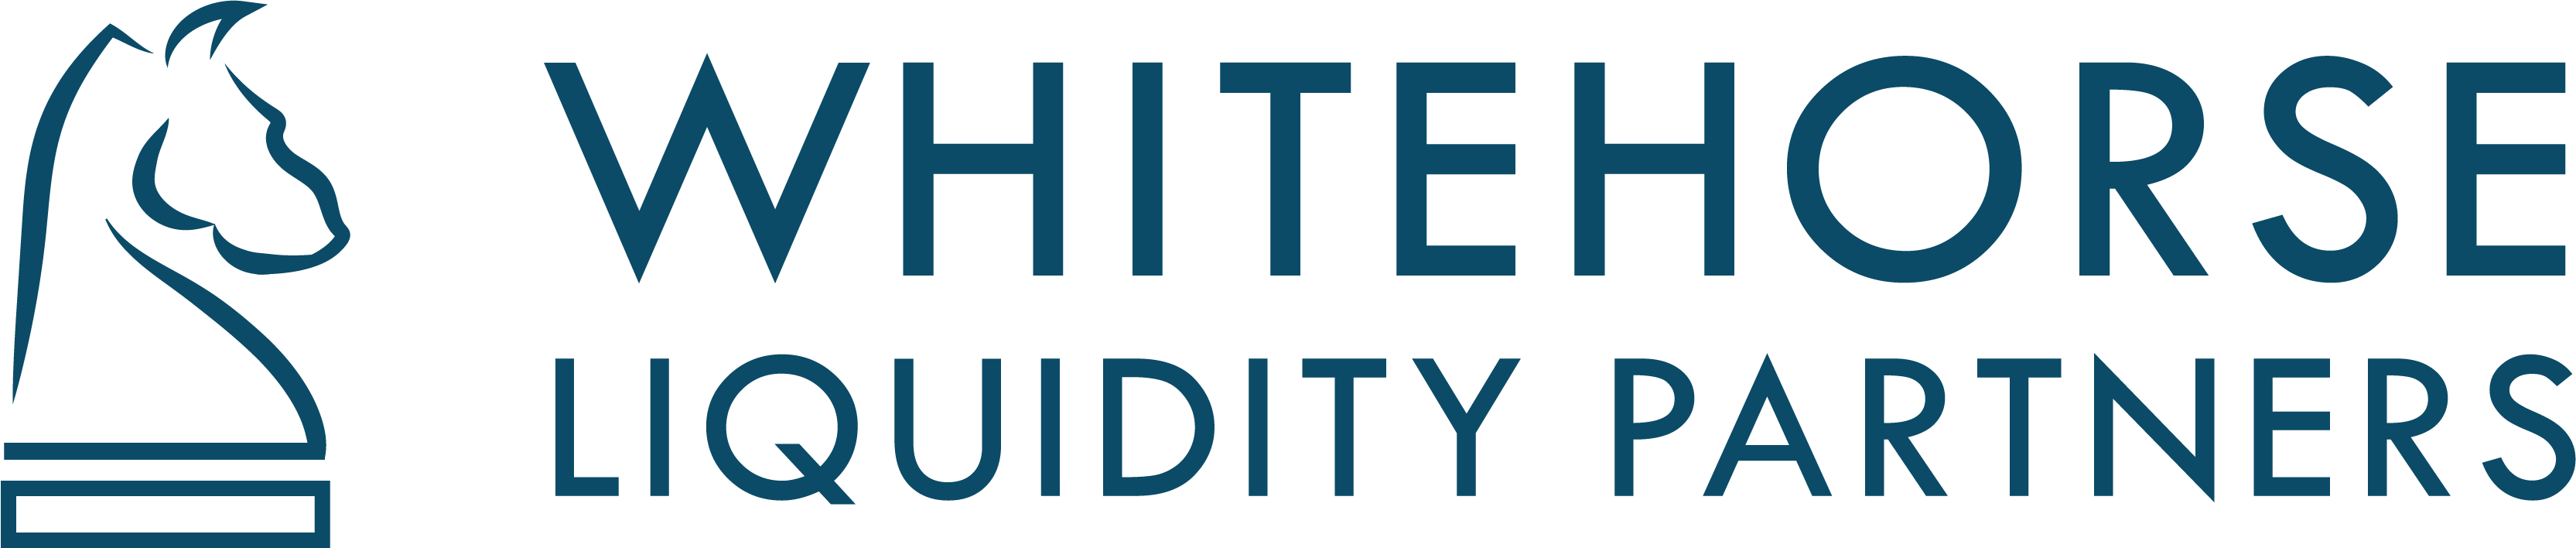 Whitehorse Liquidity